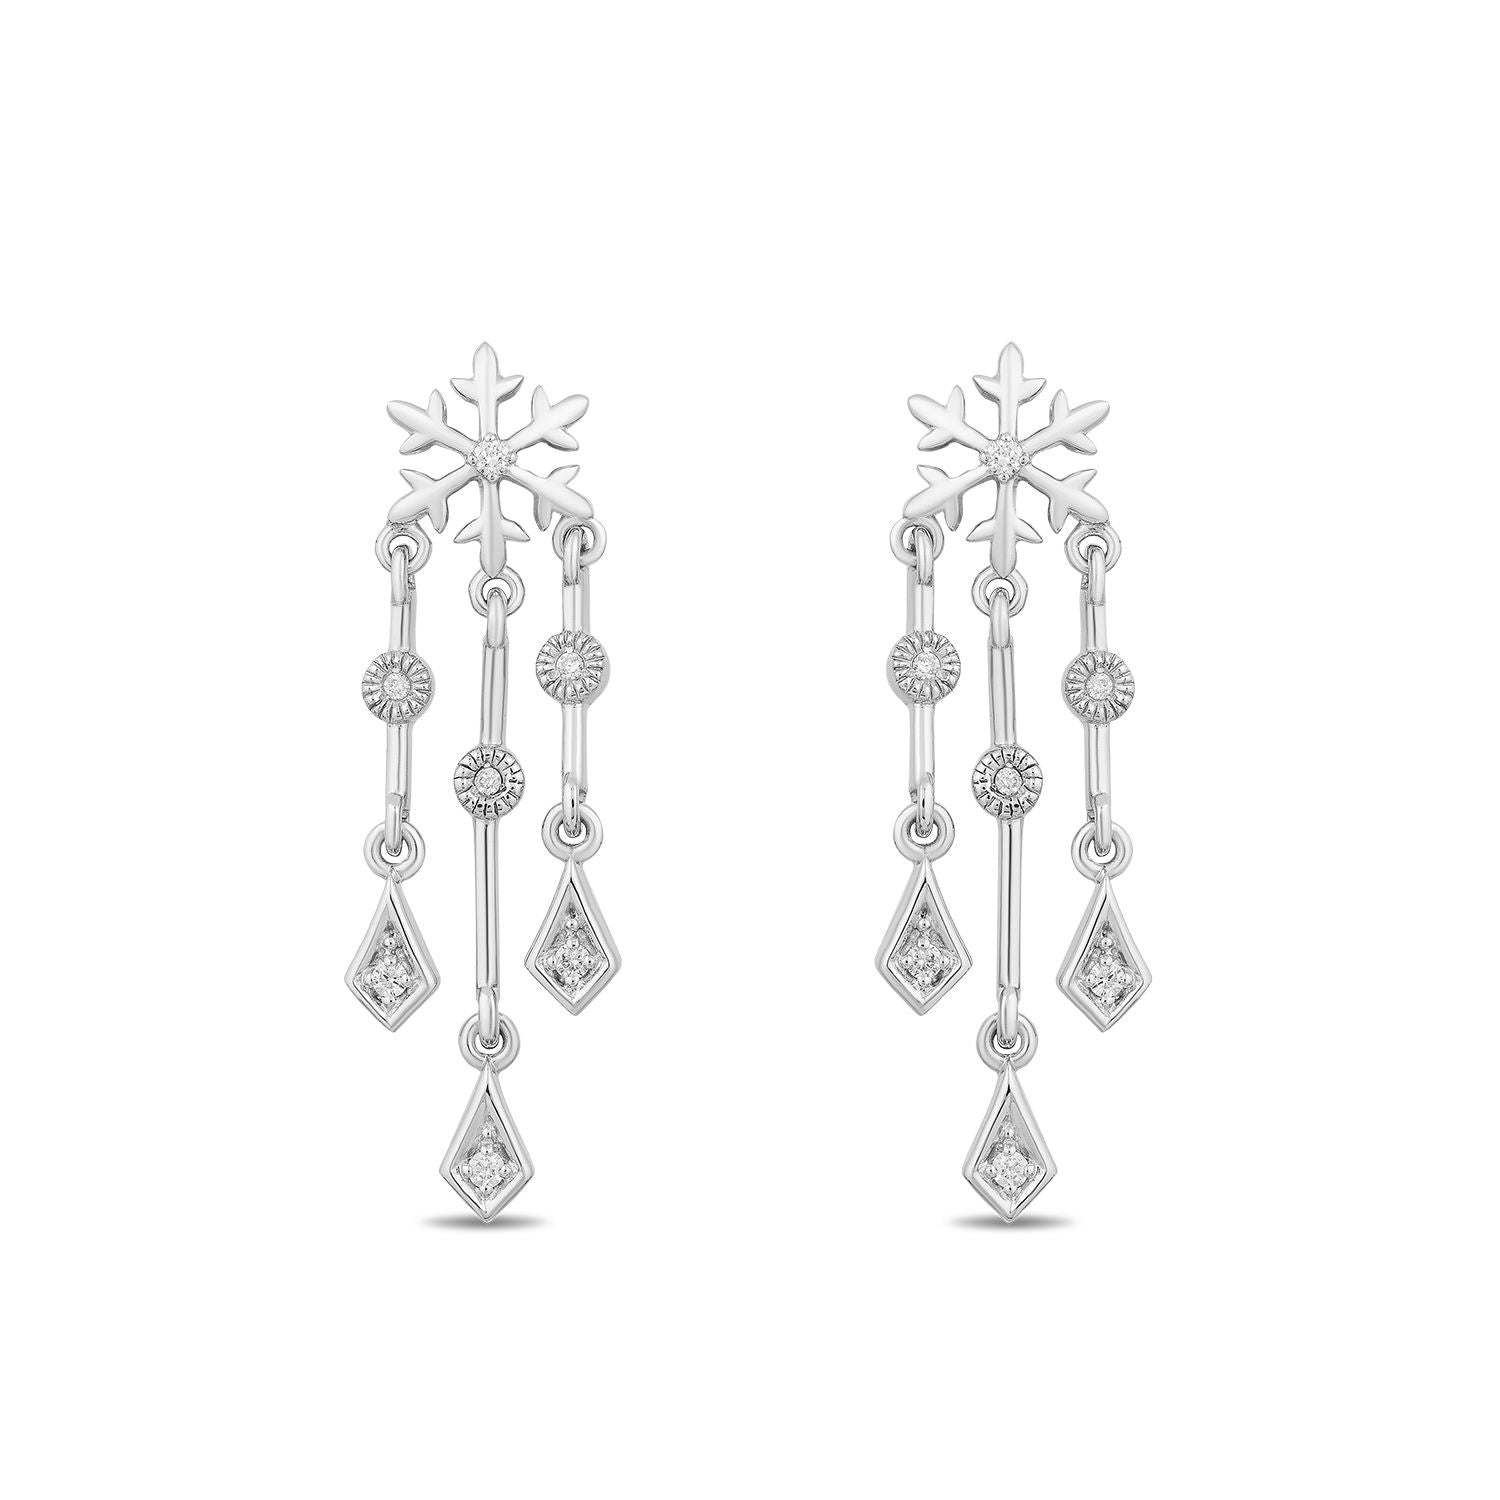 Disney Elsa Inspired Frozen Dangling Diamond Earrings 1/10 CTTW ...